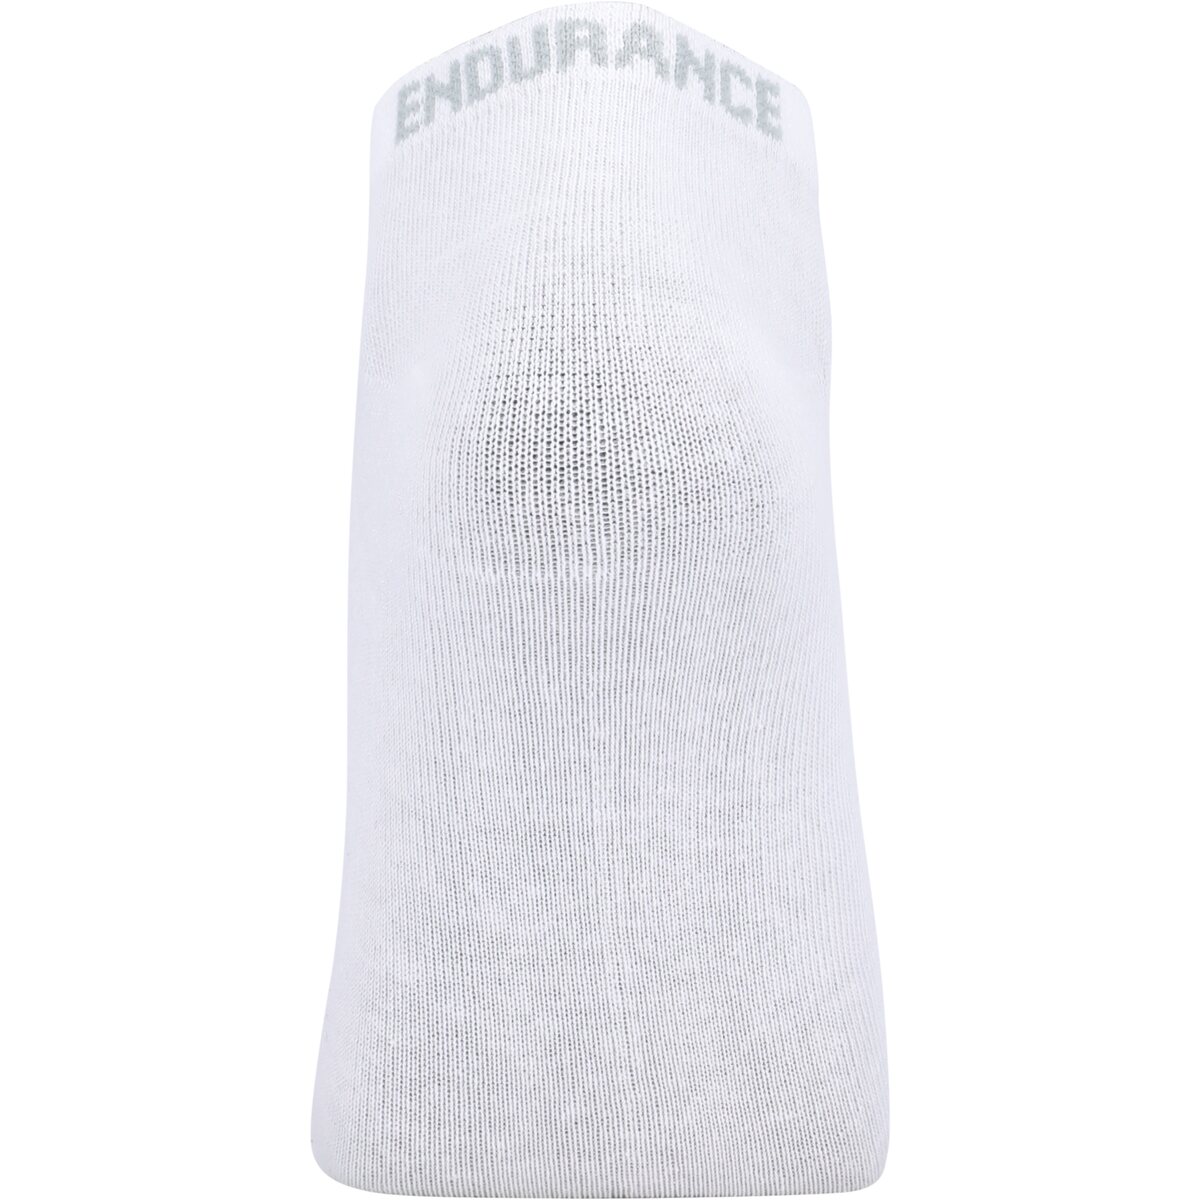 Ciorapi -  endurance Ibi Low Cut Socks 6-Pack